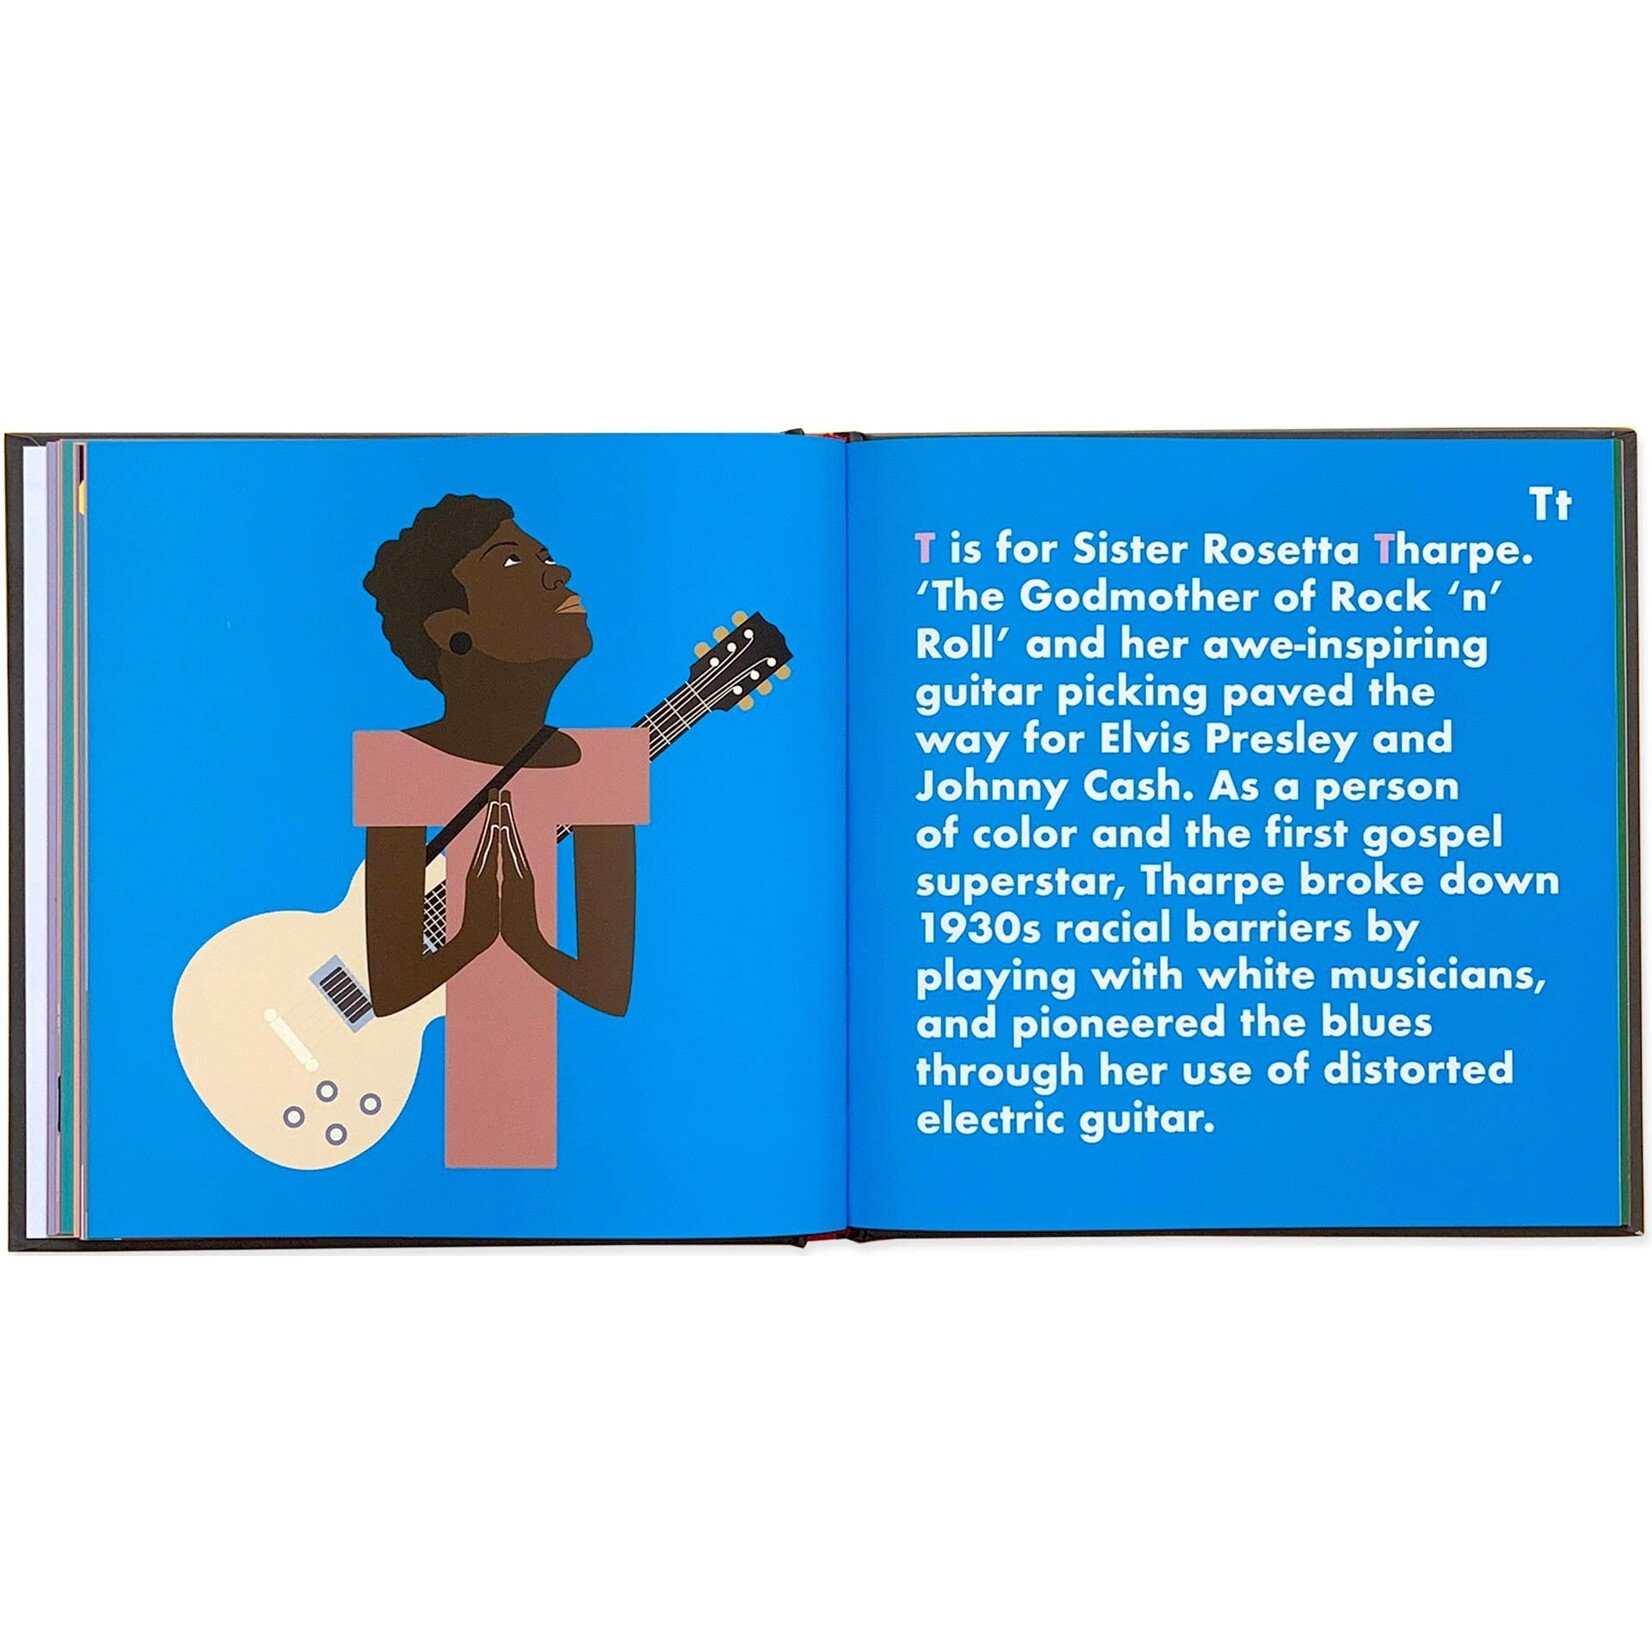 Guitar Legends Alphabet Book